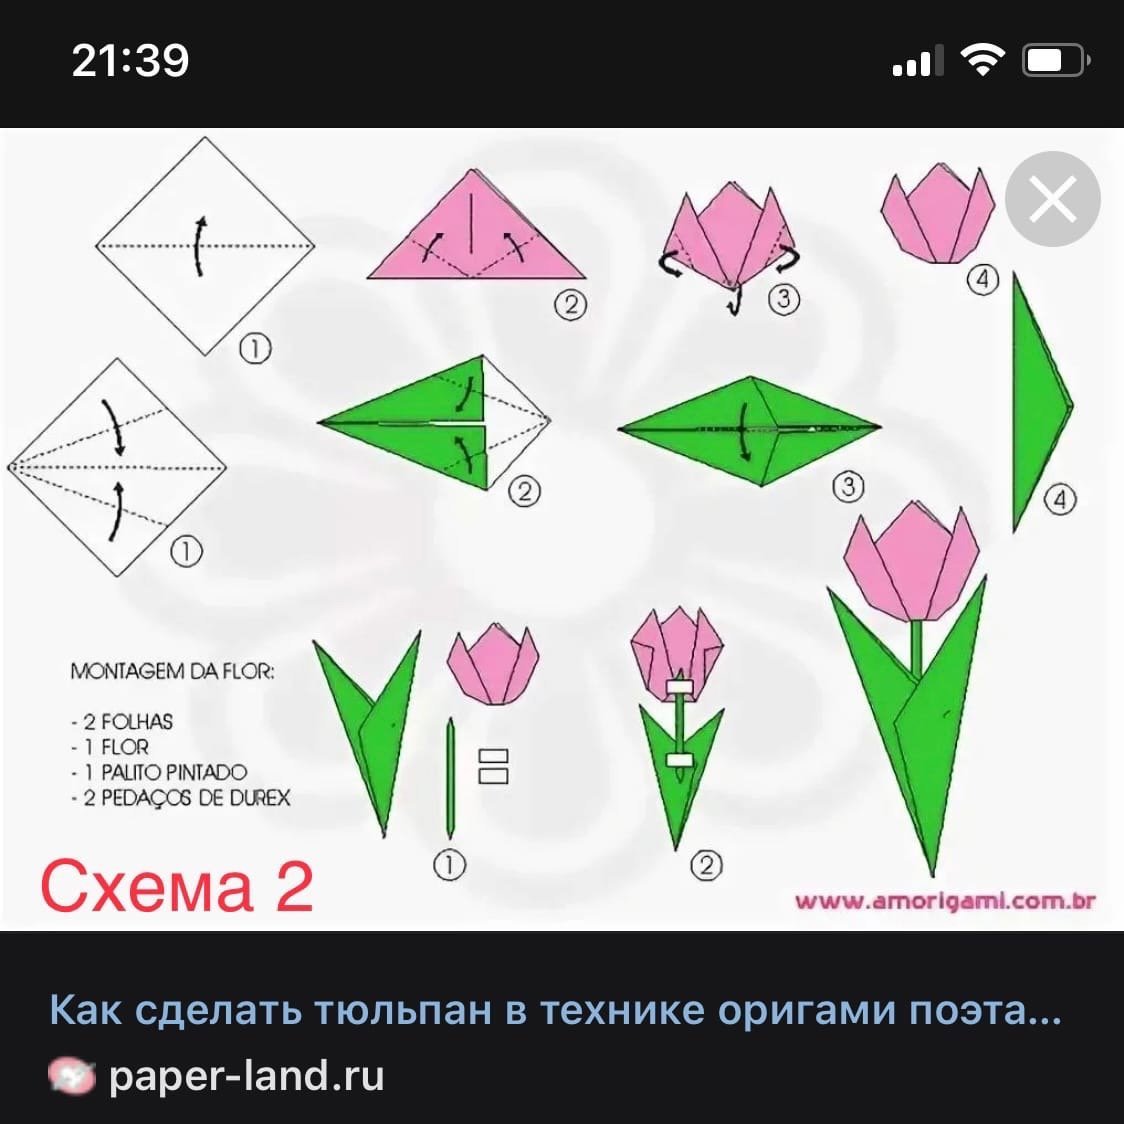 Как сделать тюльпан из бумаги поэтапно. Оригами тюльпан пошагово для начинающих. Схема оригами тюльпана для начинающих. Оригами тюльпан схема для детей простая. Оригами тюльпан схема для начинающих пошагово.